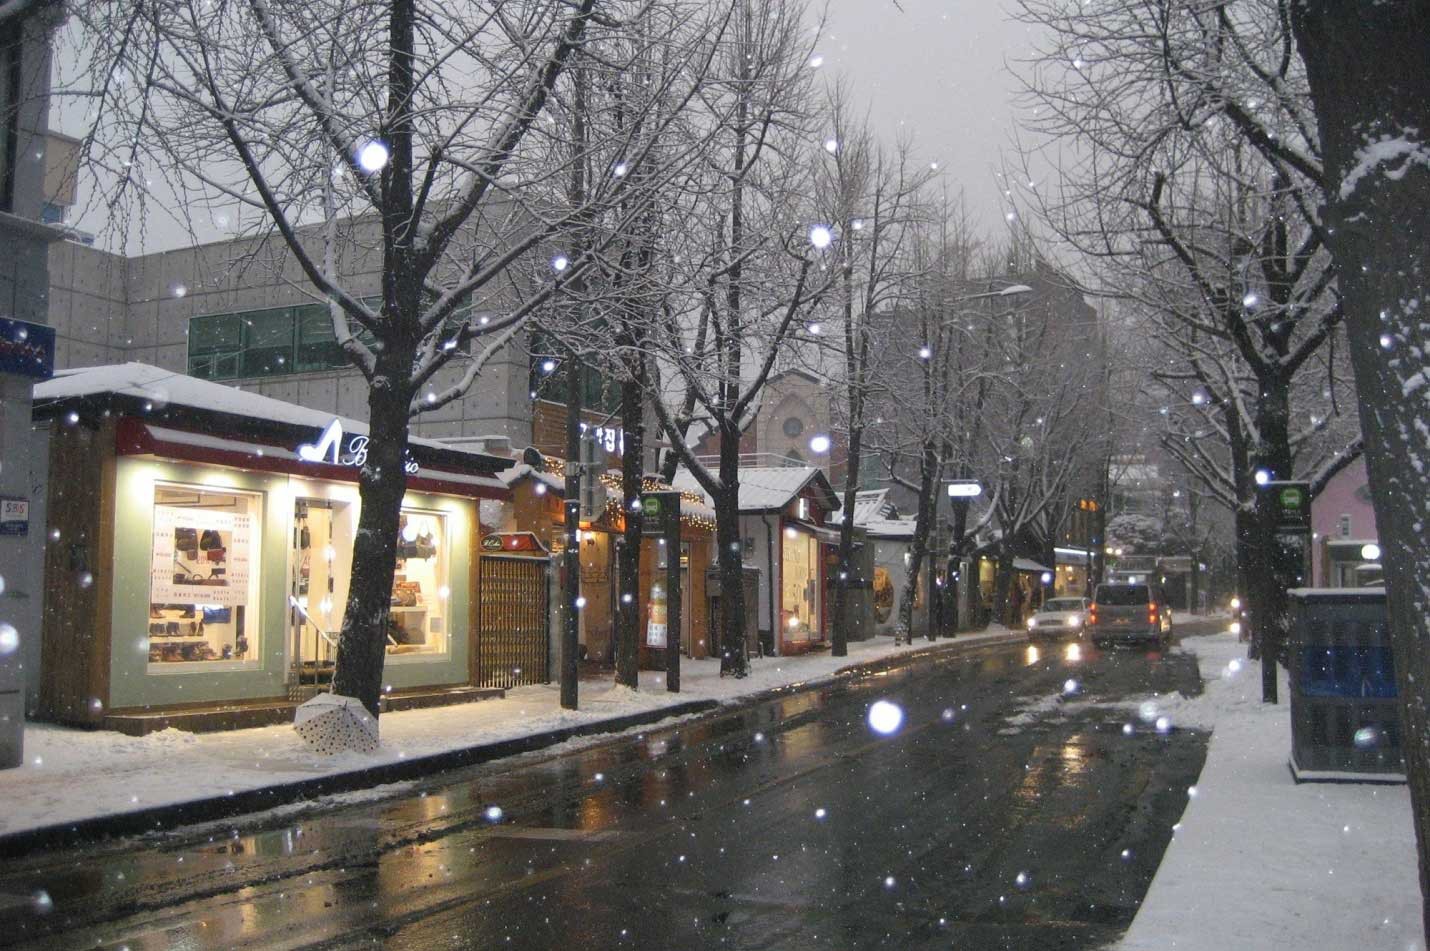 Hình Nền Tuyết Rơi Vào Mùa đông Tải Về Miễn Phí, Hình ảnh lễ hội, tuyết rơi,  giáng sinh vui vẻ Sáng Tạo Từ Lovepik